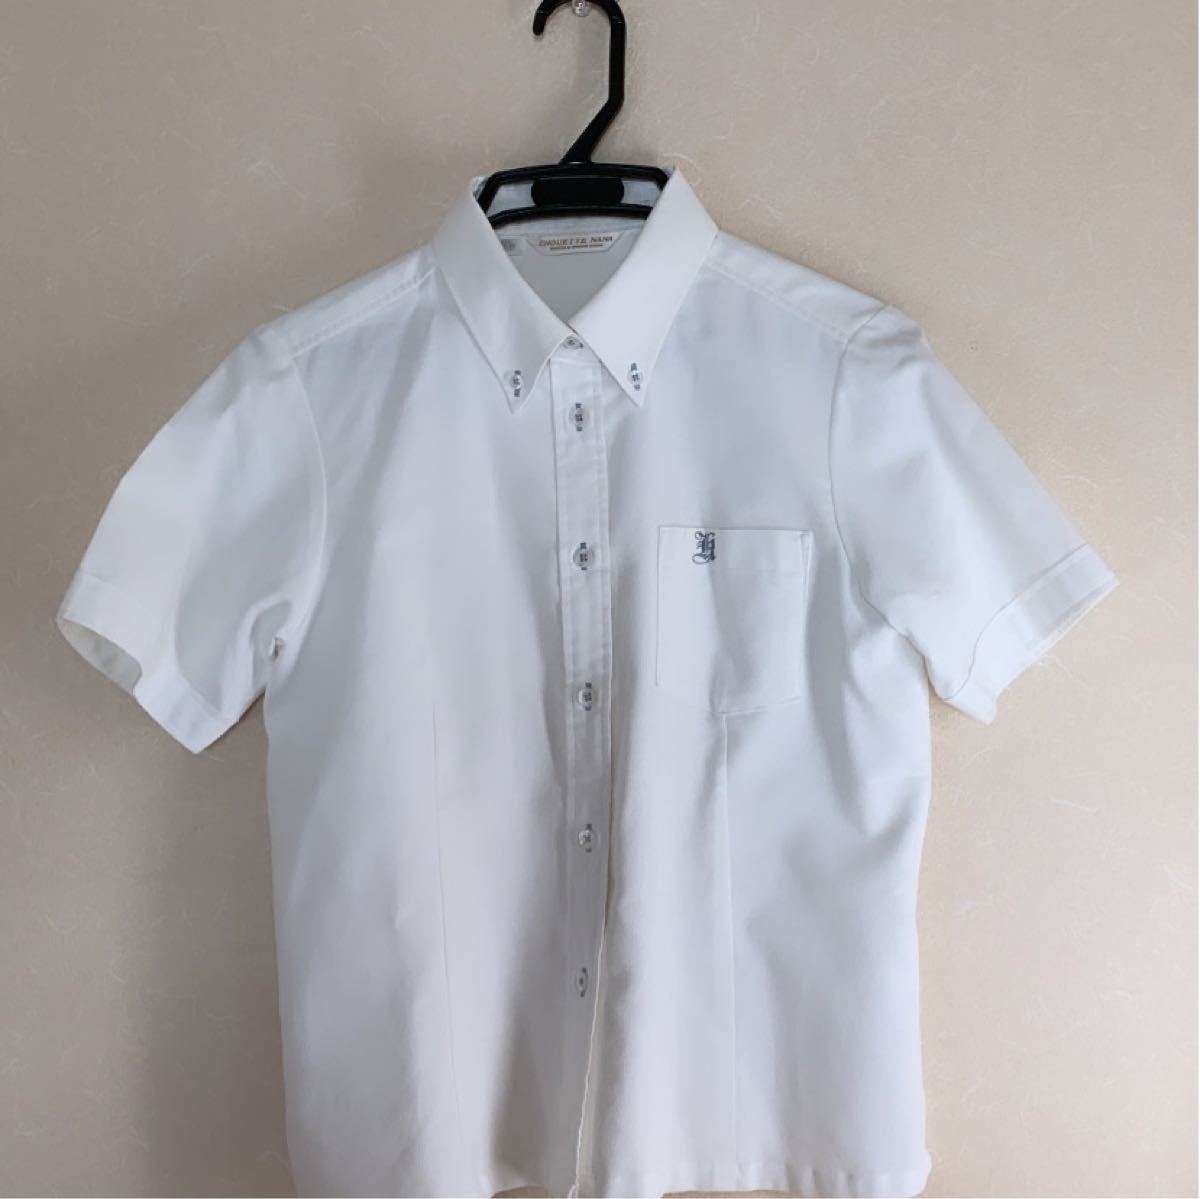 【新品未使用】制服 高校指定 半袖シャツ 白色 Mサイズ 男女兼用 2枚